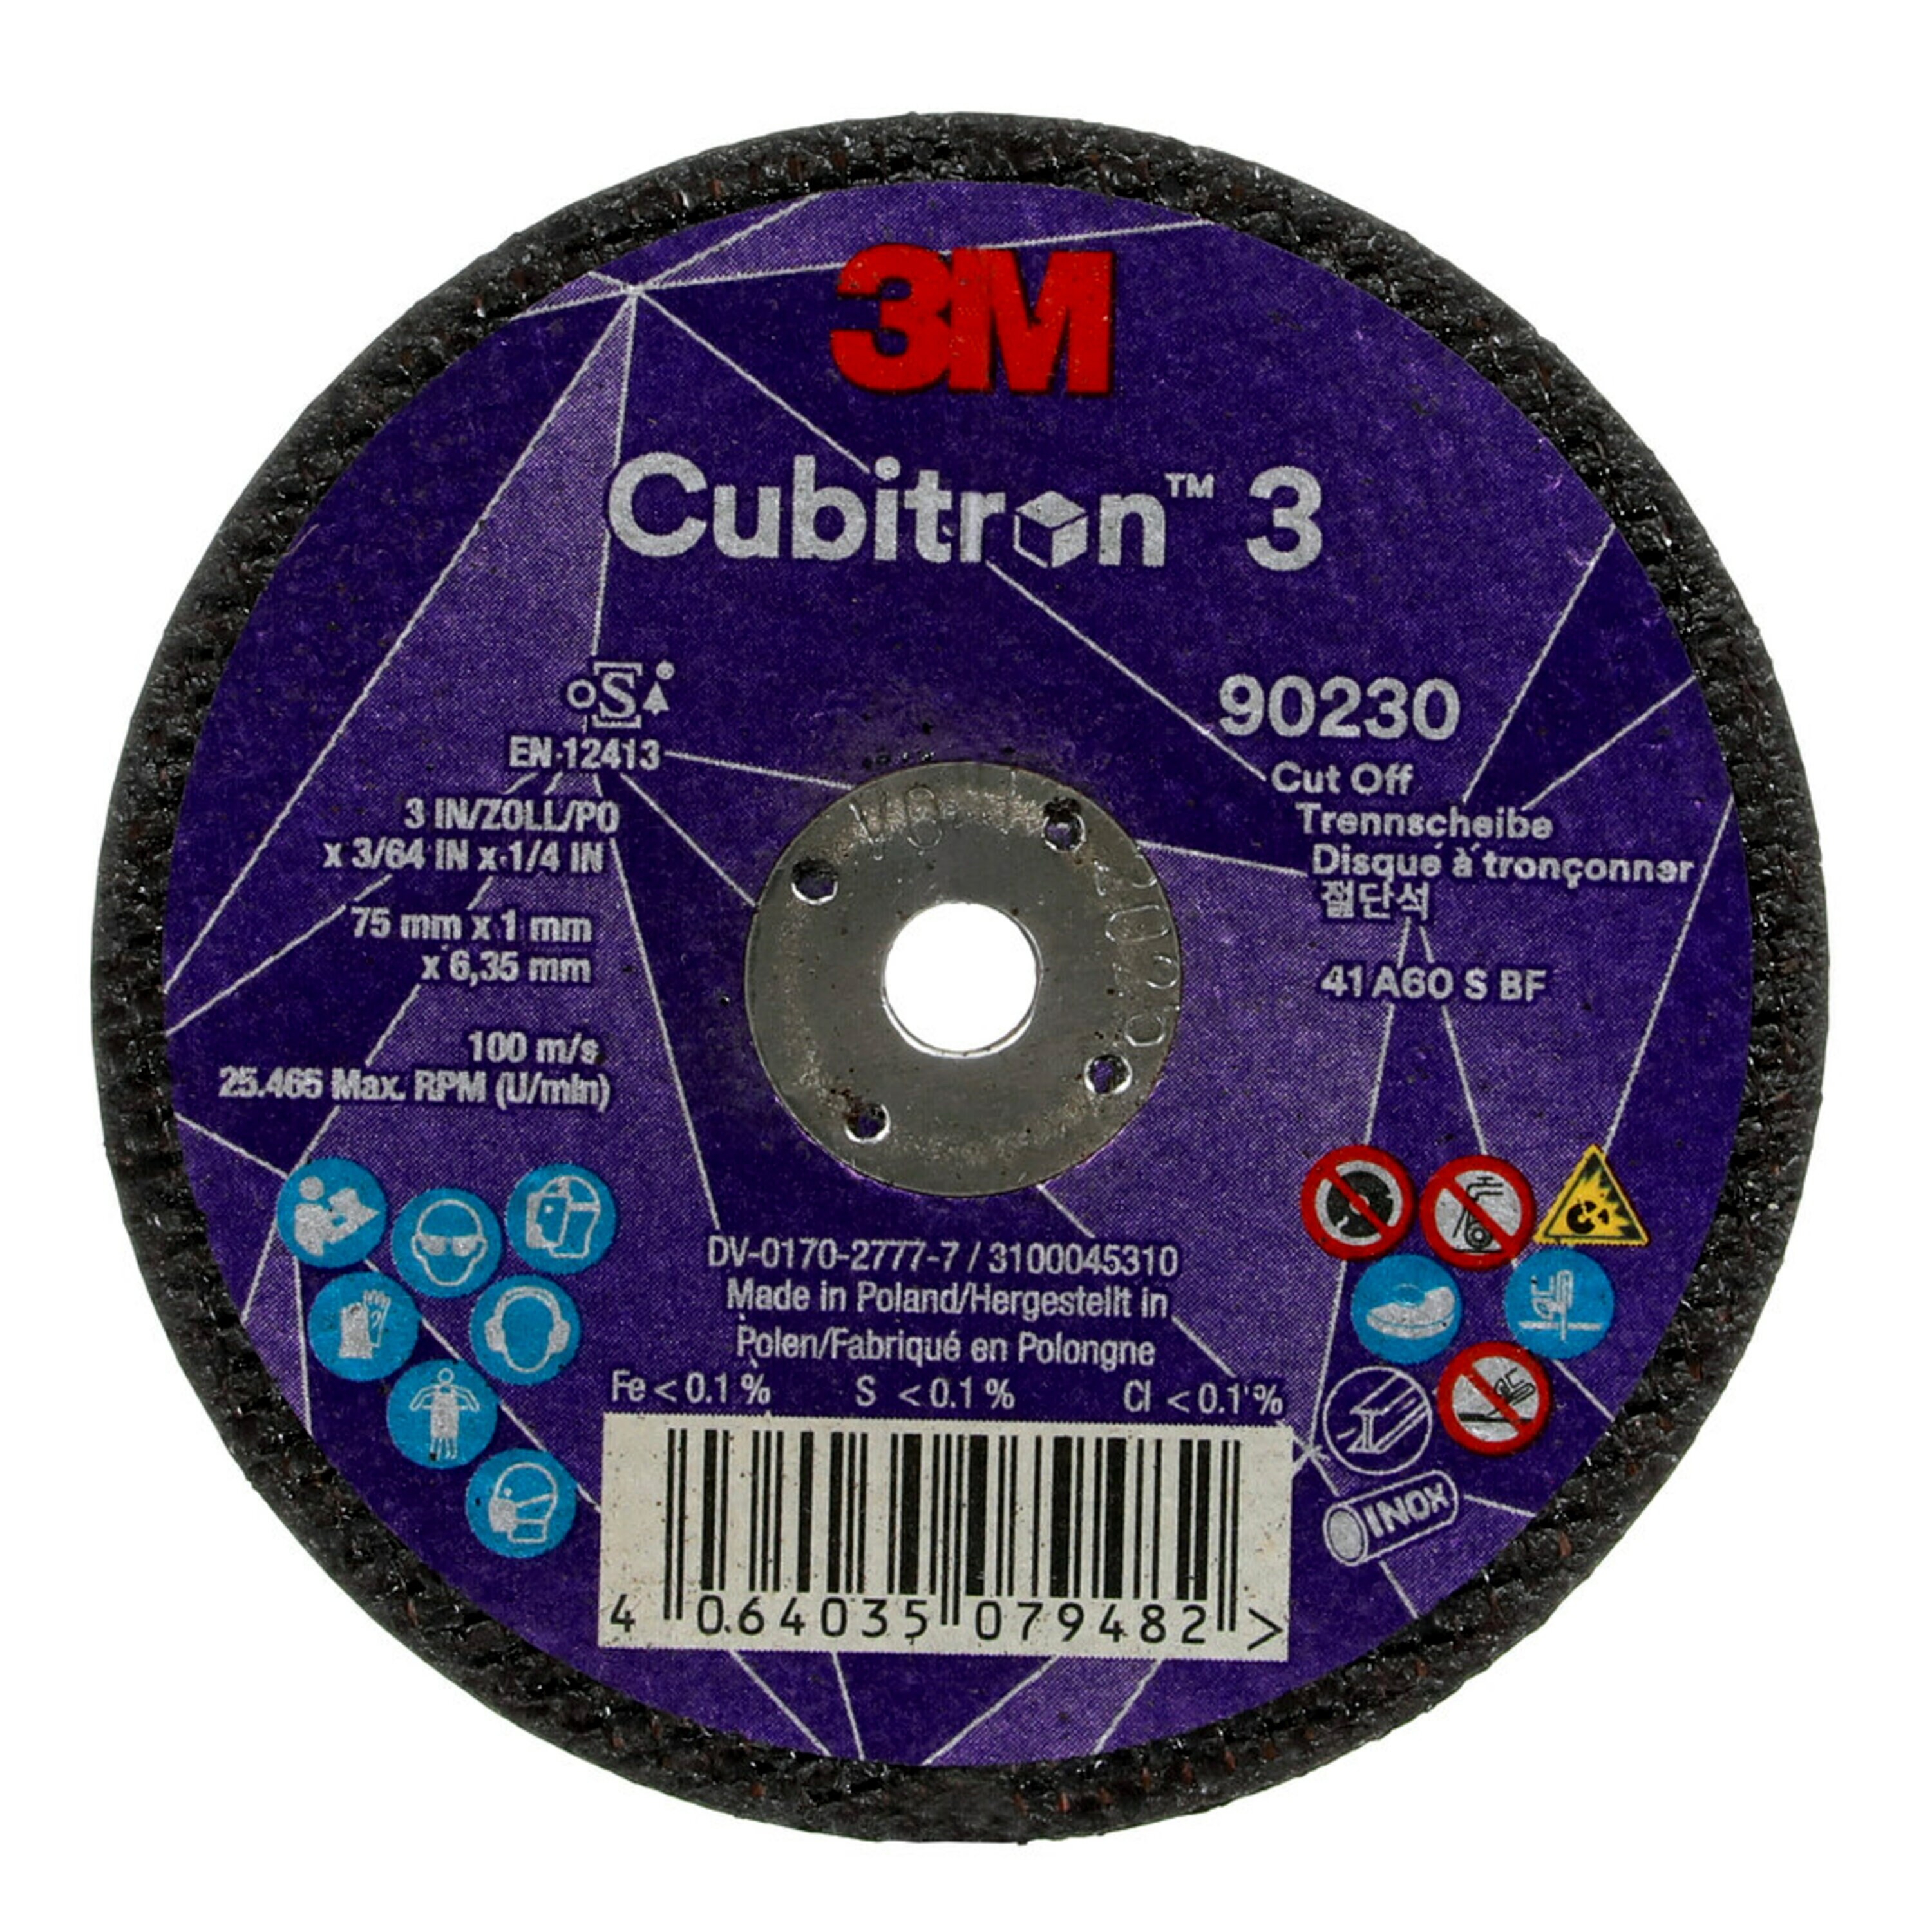 3M Cubitron 3 snijschijf, 75 mm, 1 mm, 6,35 mm, 60 , type 41 #90230